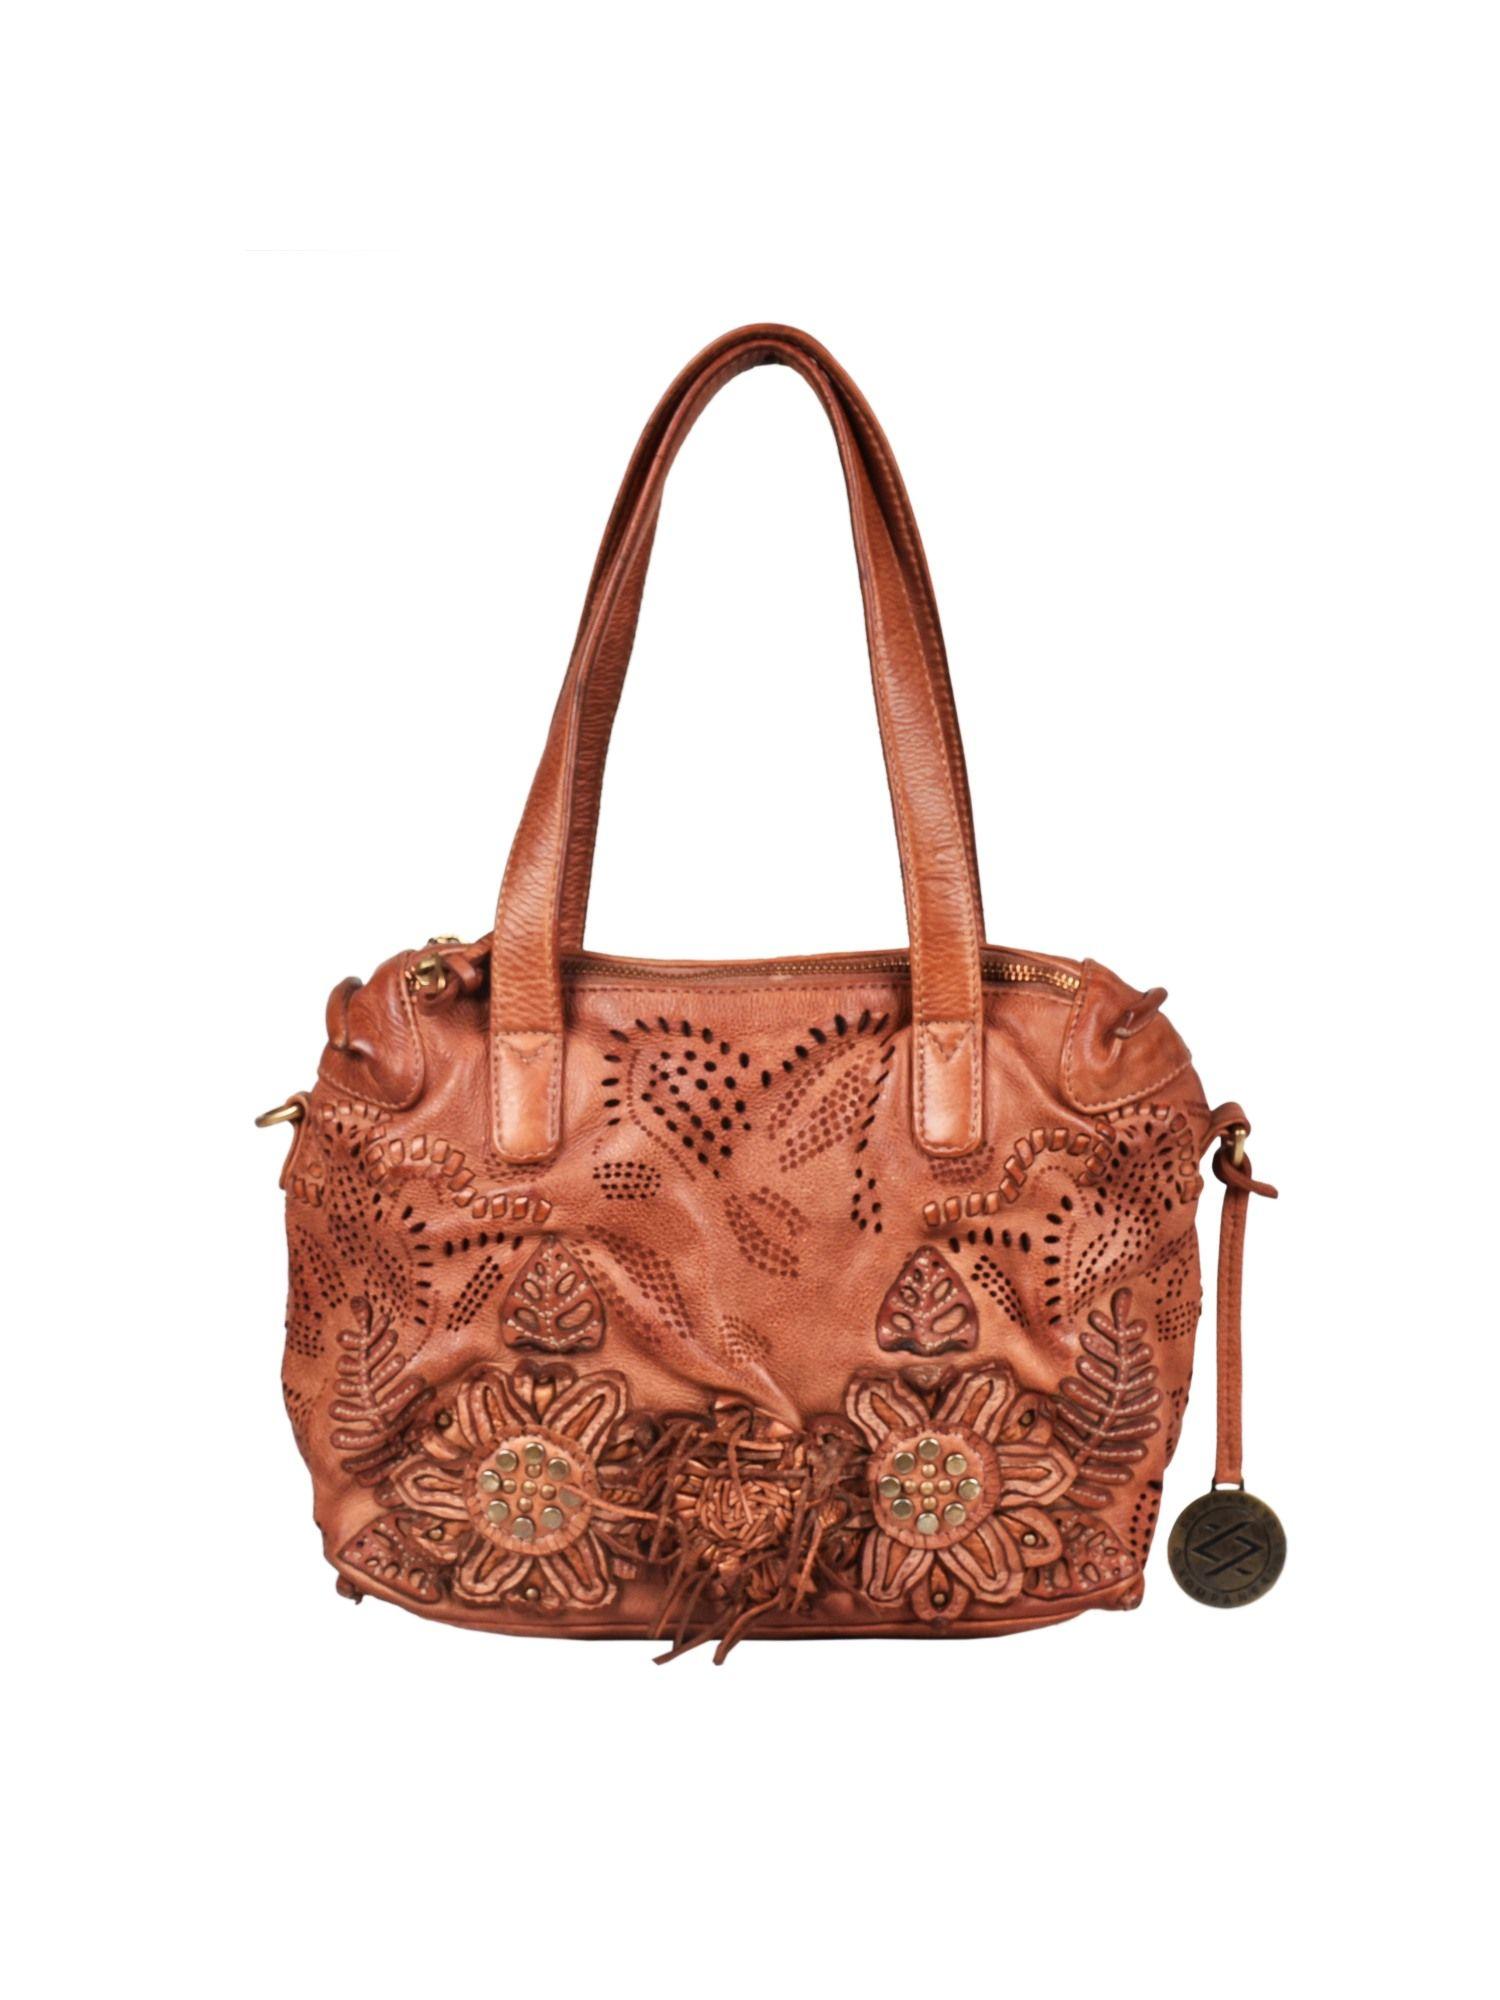 gardenia - the medium handbag